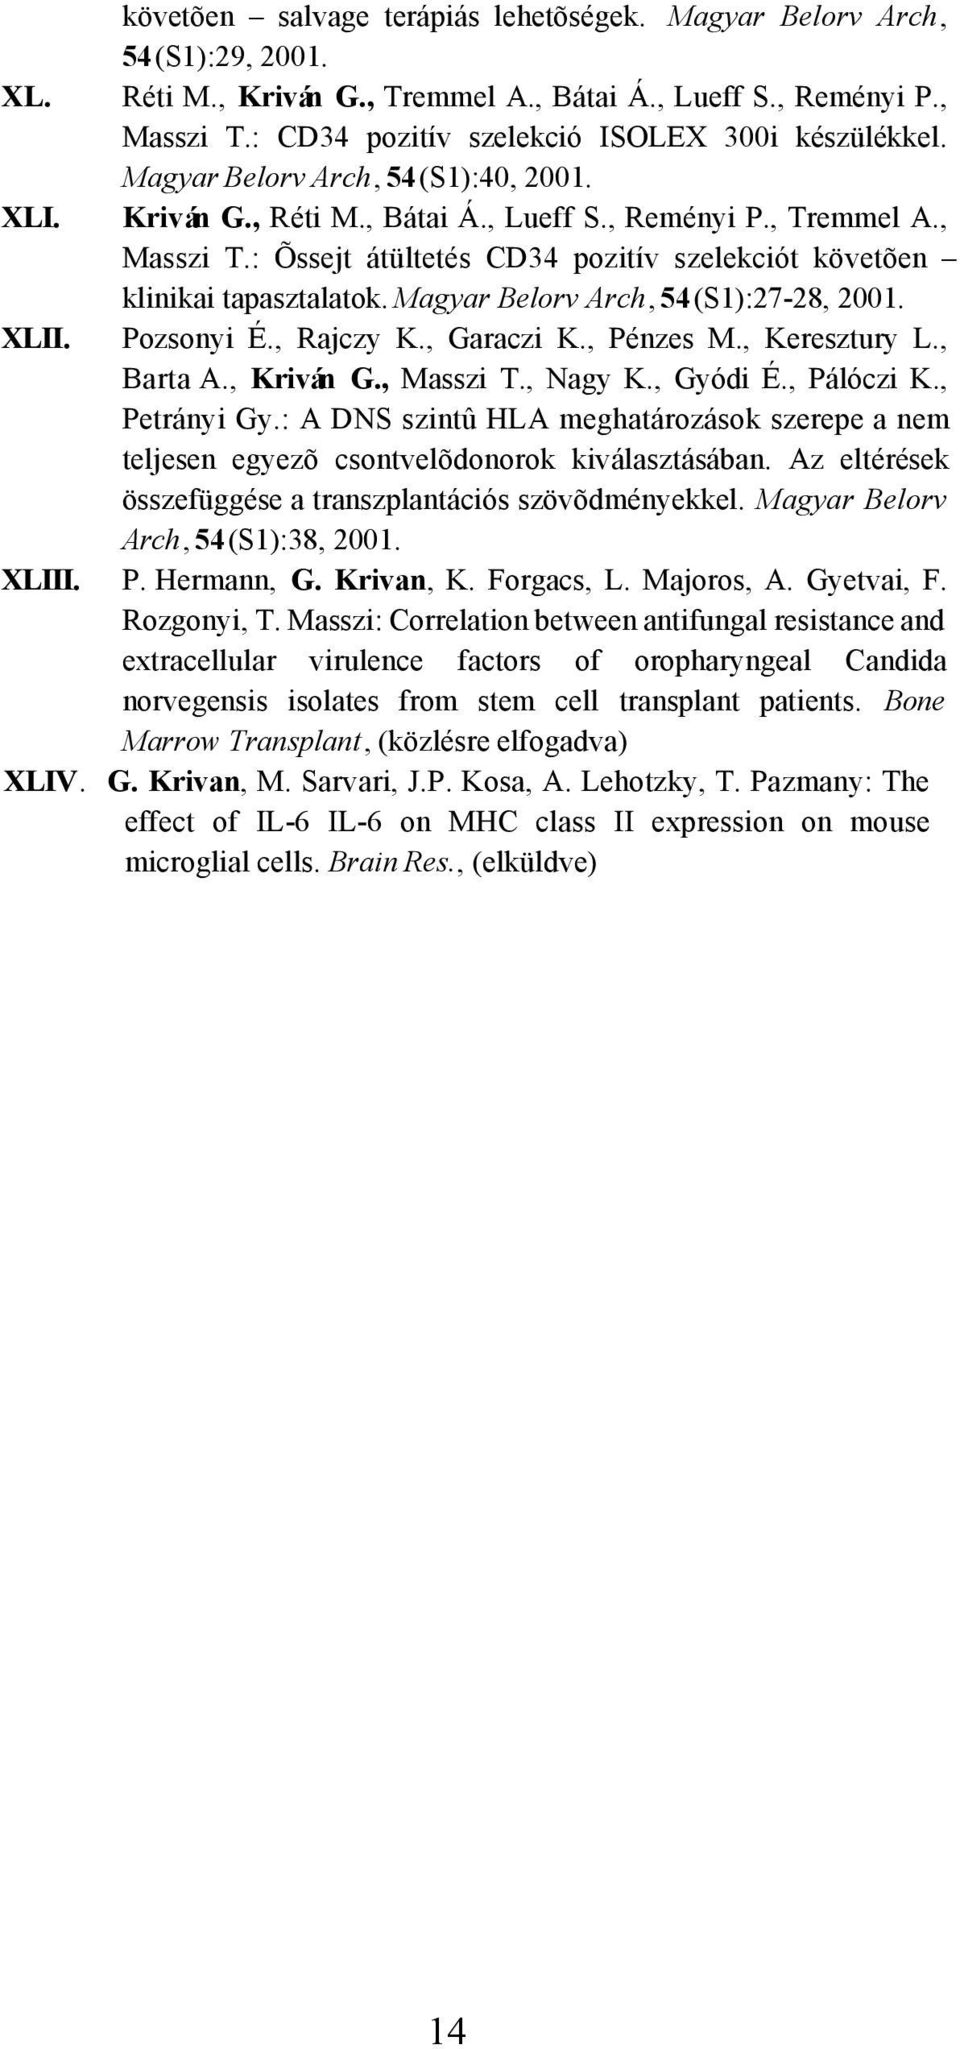 : Õssejt átültetés CD34 pozitív szelekciót követõen klinikai tapasztalatok. Magyar Belorv Arch, 54(S1):27-28, 2001. XLII. Pozsonyi É., Rajczy K., Garaczi K., Pénzes M., Keresztury L., Barta A.